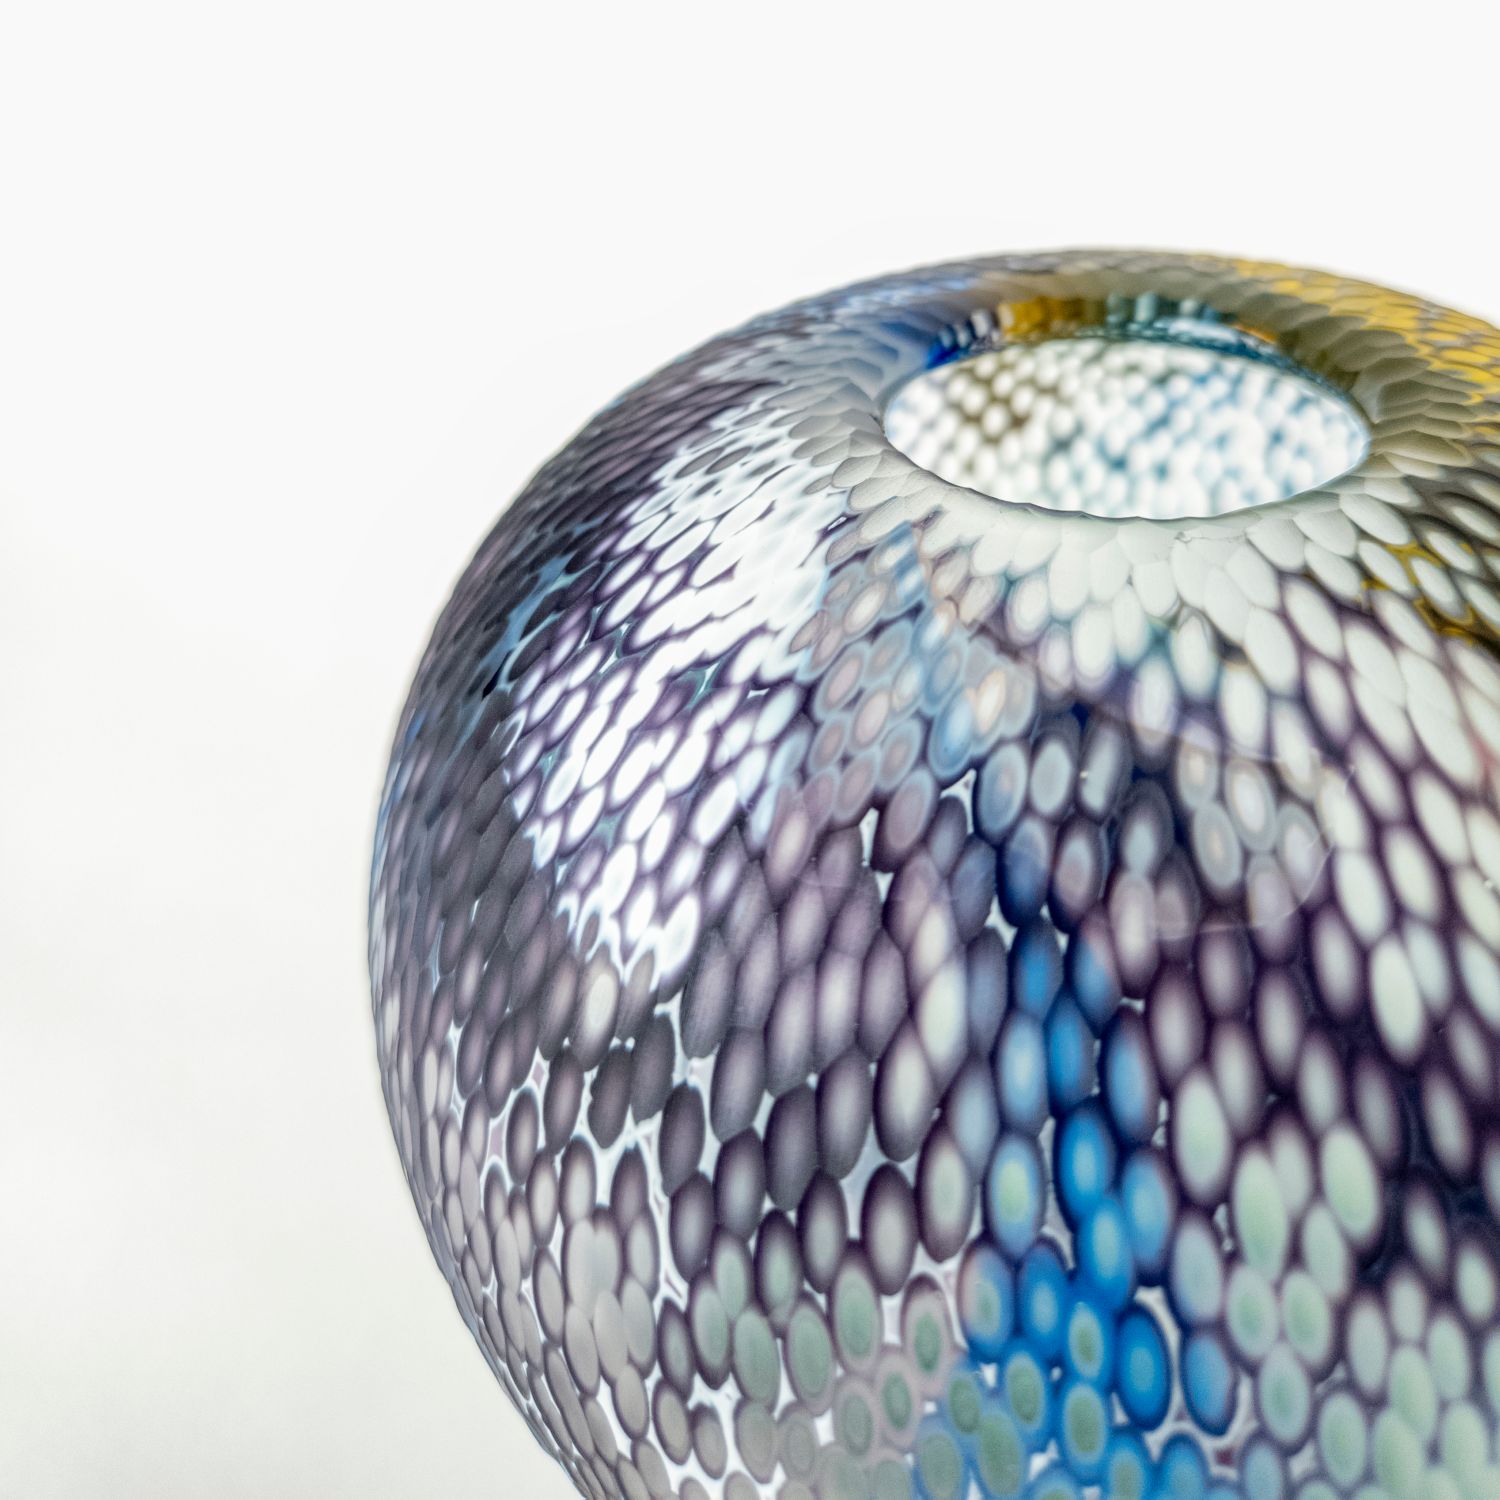 Sydni Weatherson: Iris – Glass Vase Product Image 4 of 8